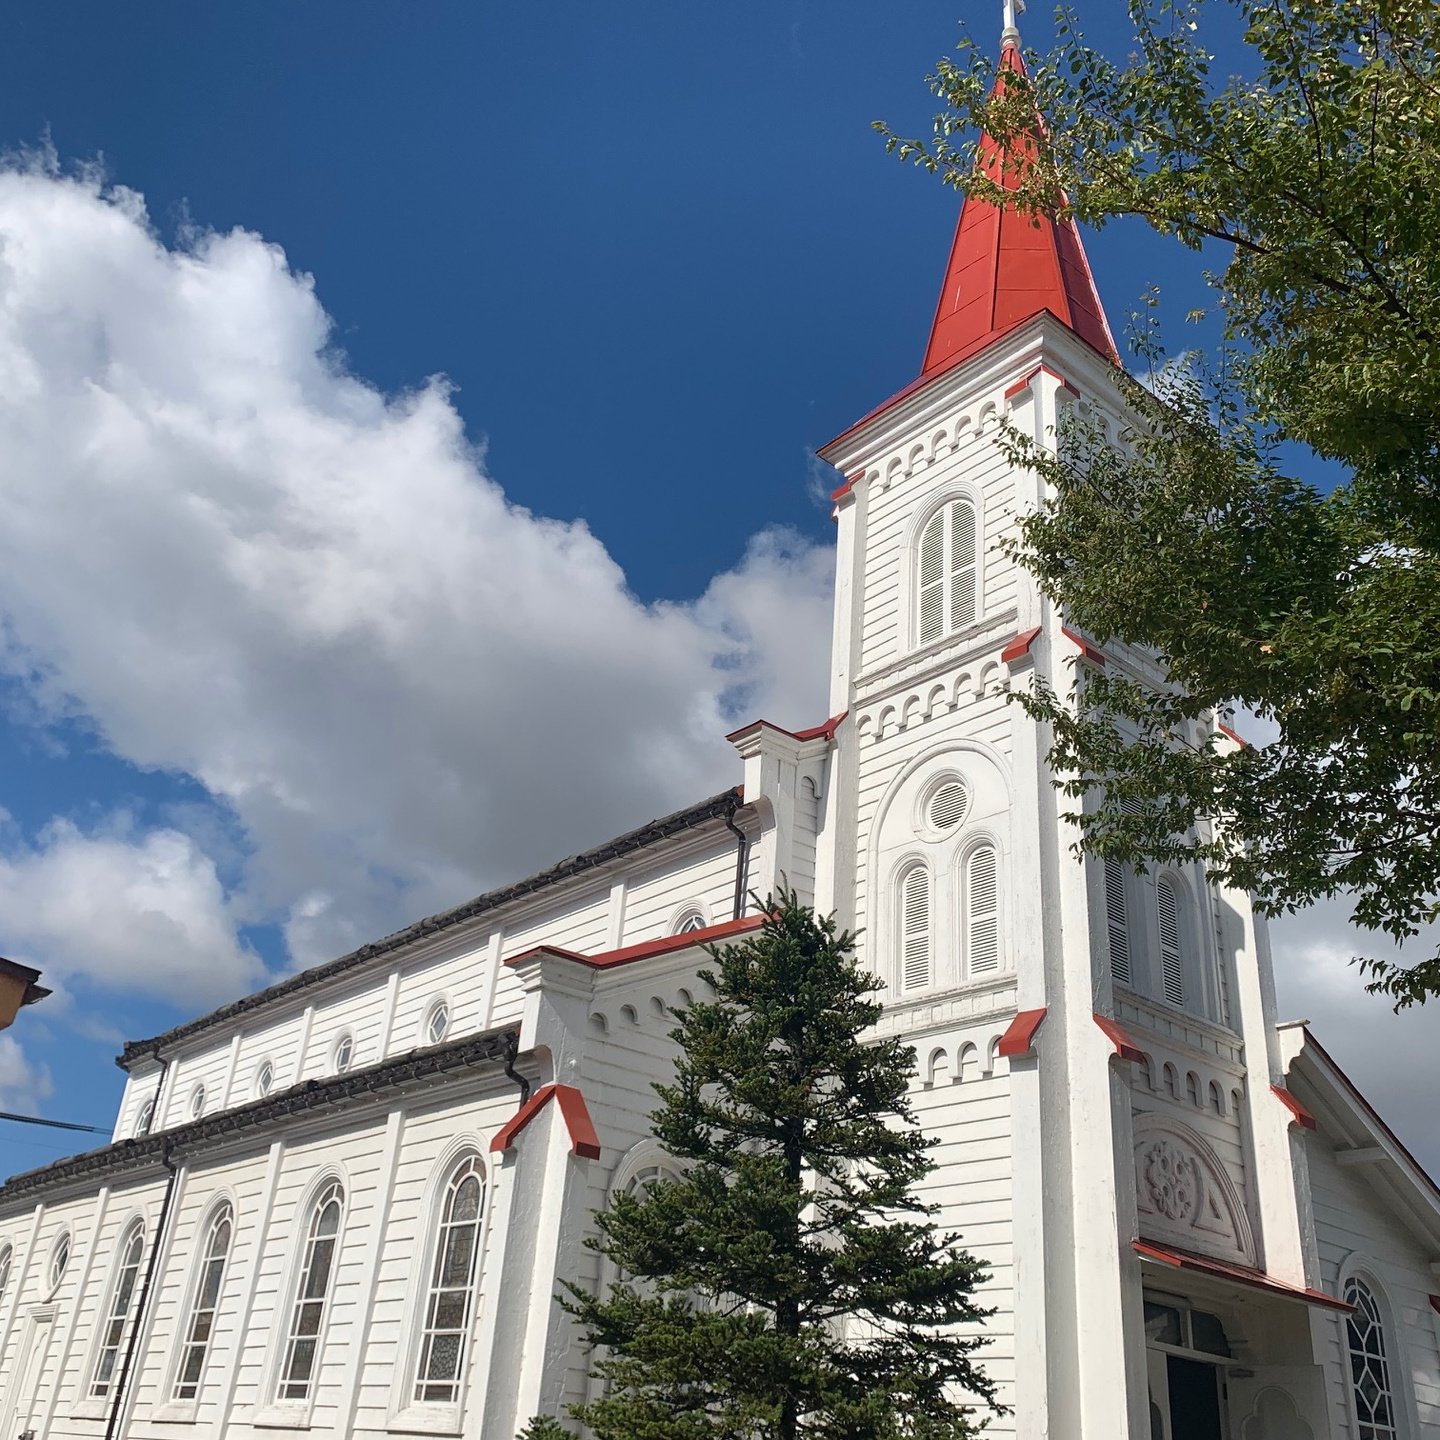 カトリック鶴岡教会